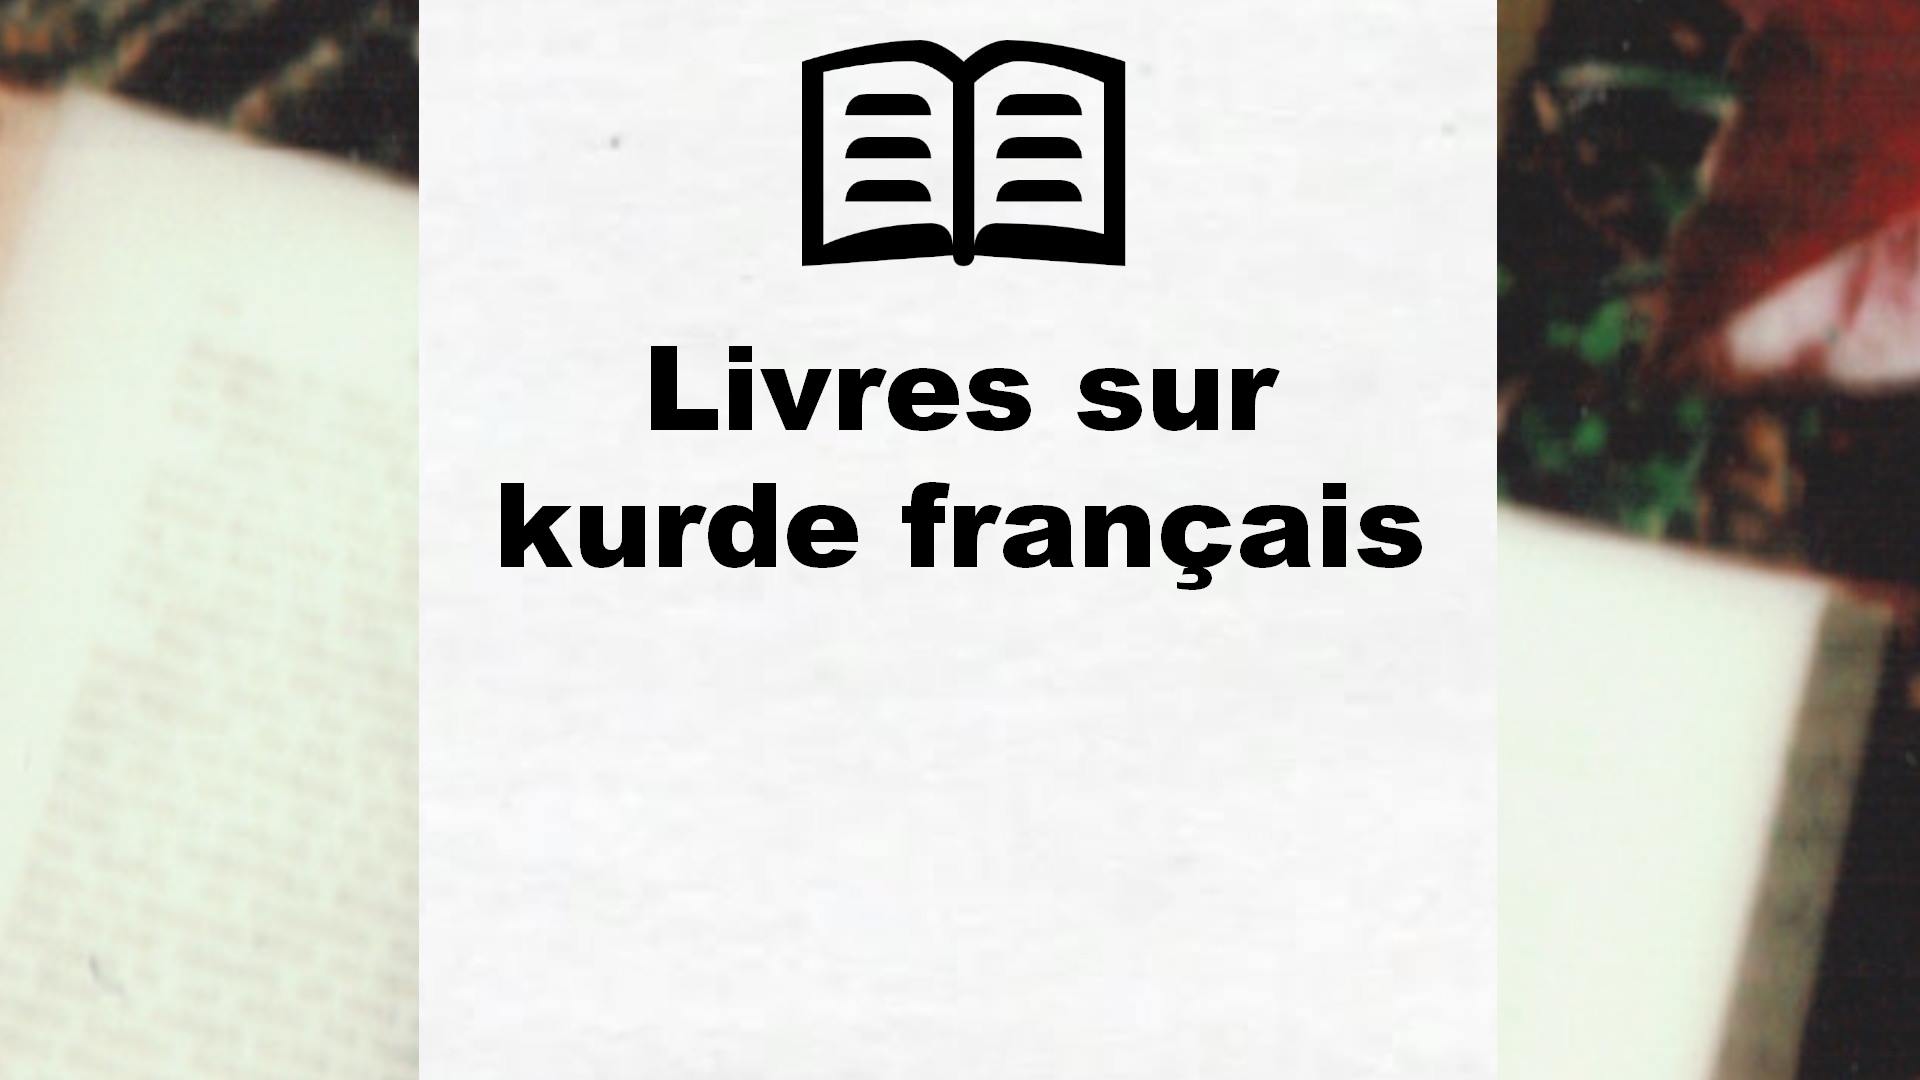 Livres sur kurde français